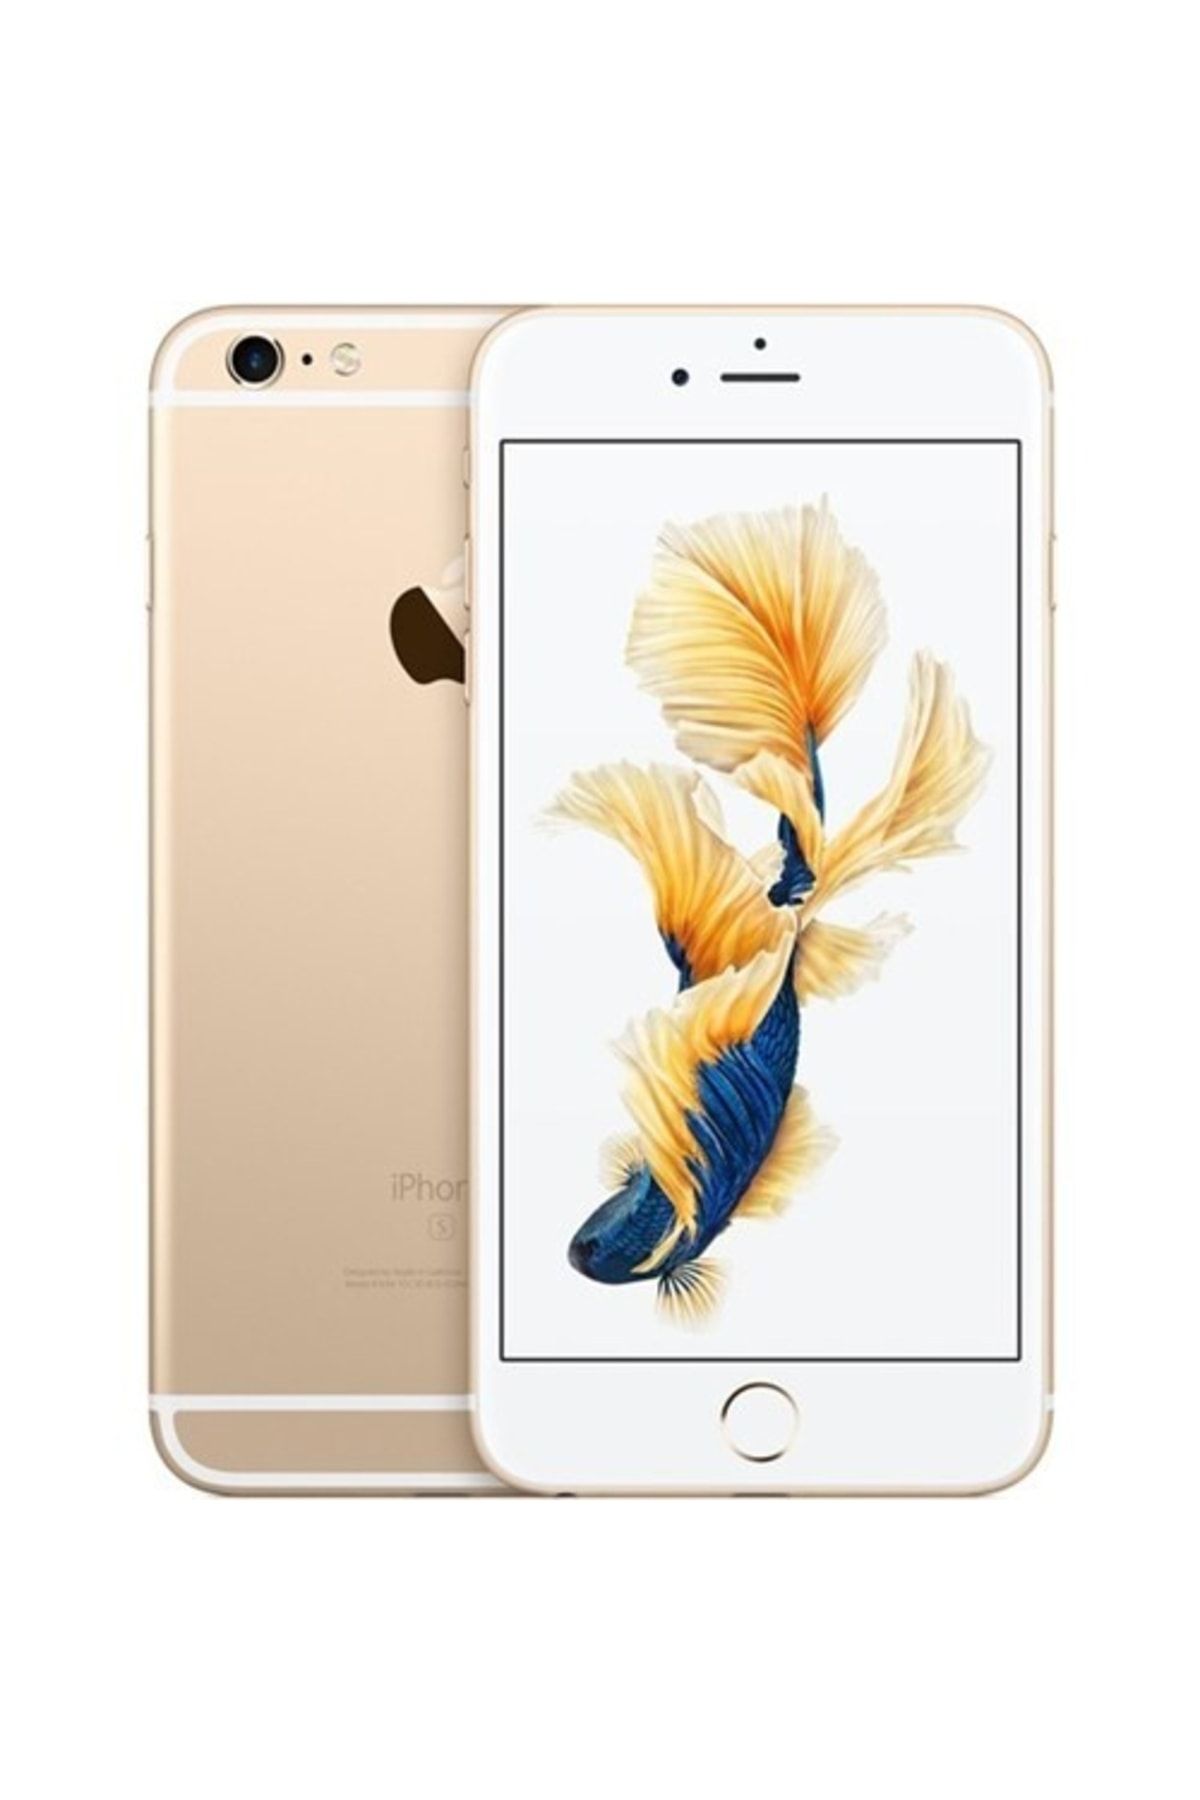 Apple Yenilenmiş iPhone 6s Plus Gold 32 GB